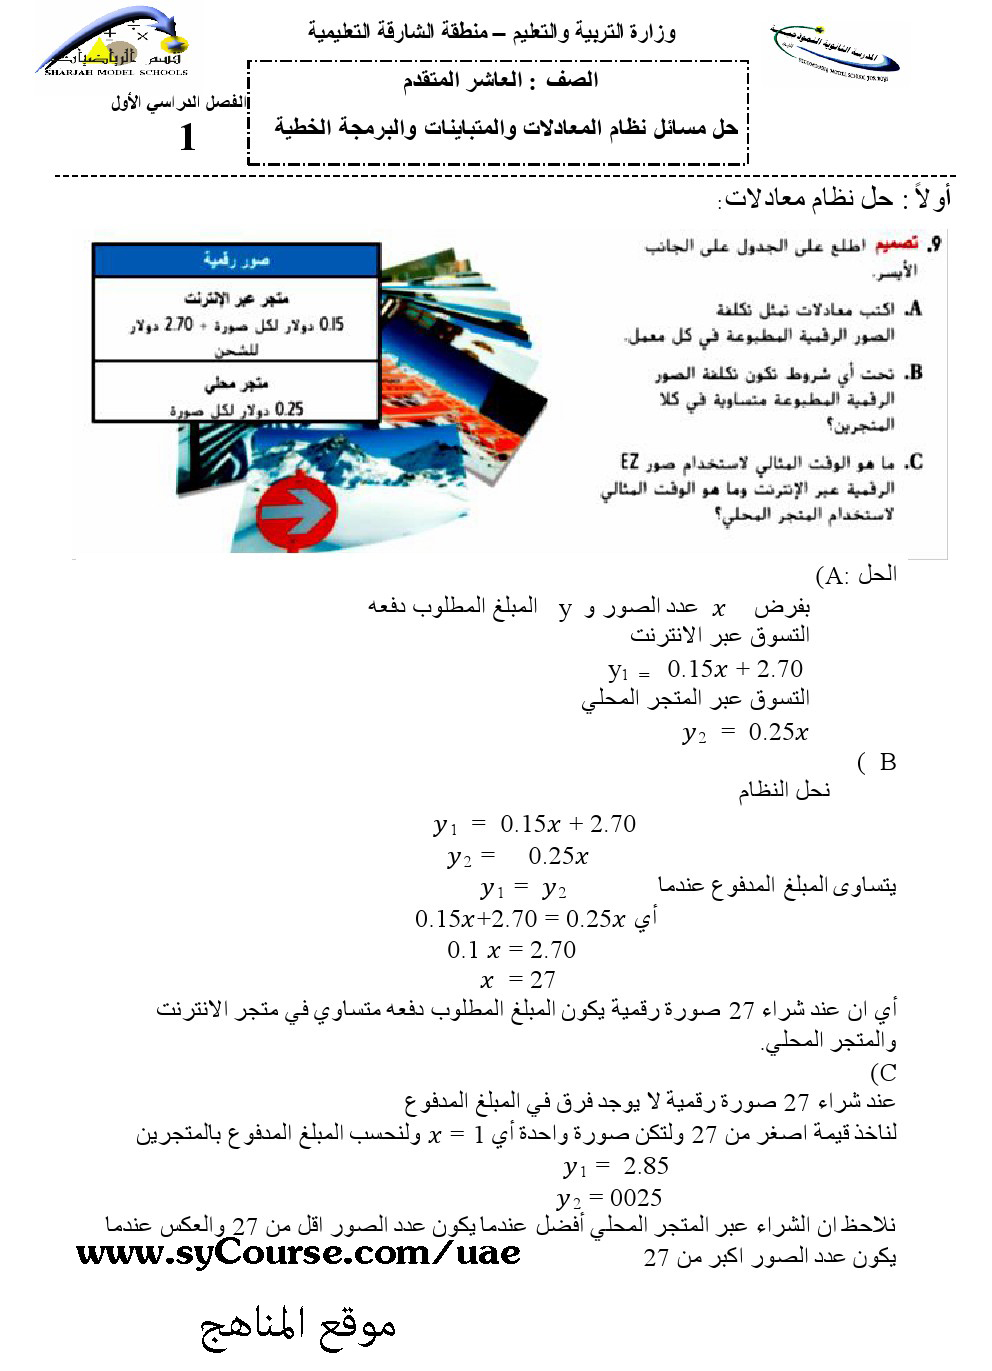 حل مسائل نظام المعادلات والمتباينات والبرمجة الخطية الصف العاشر المتقدم رياضيات الفصل الأول 2016 2017 المناهج الإماراتية